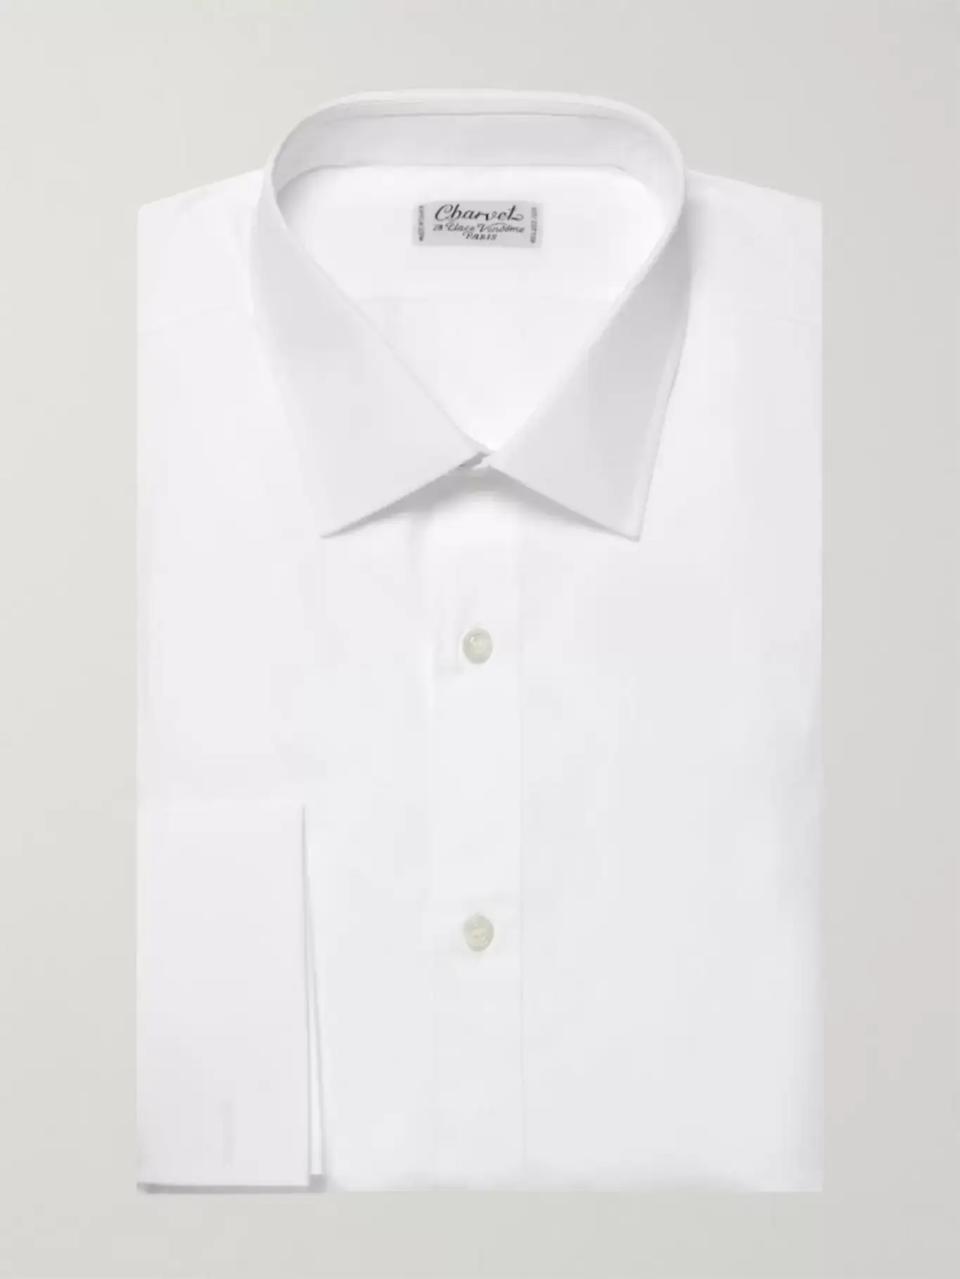 white dress shirt for men